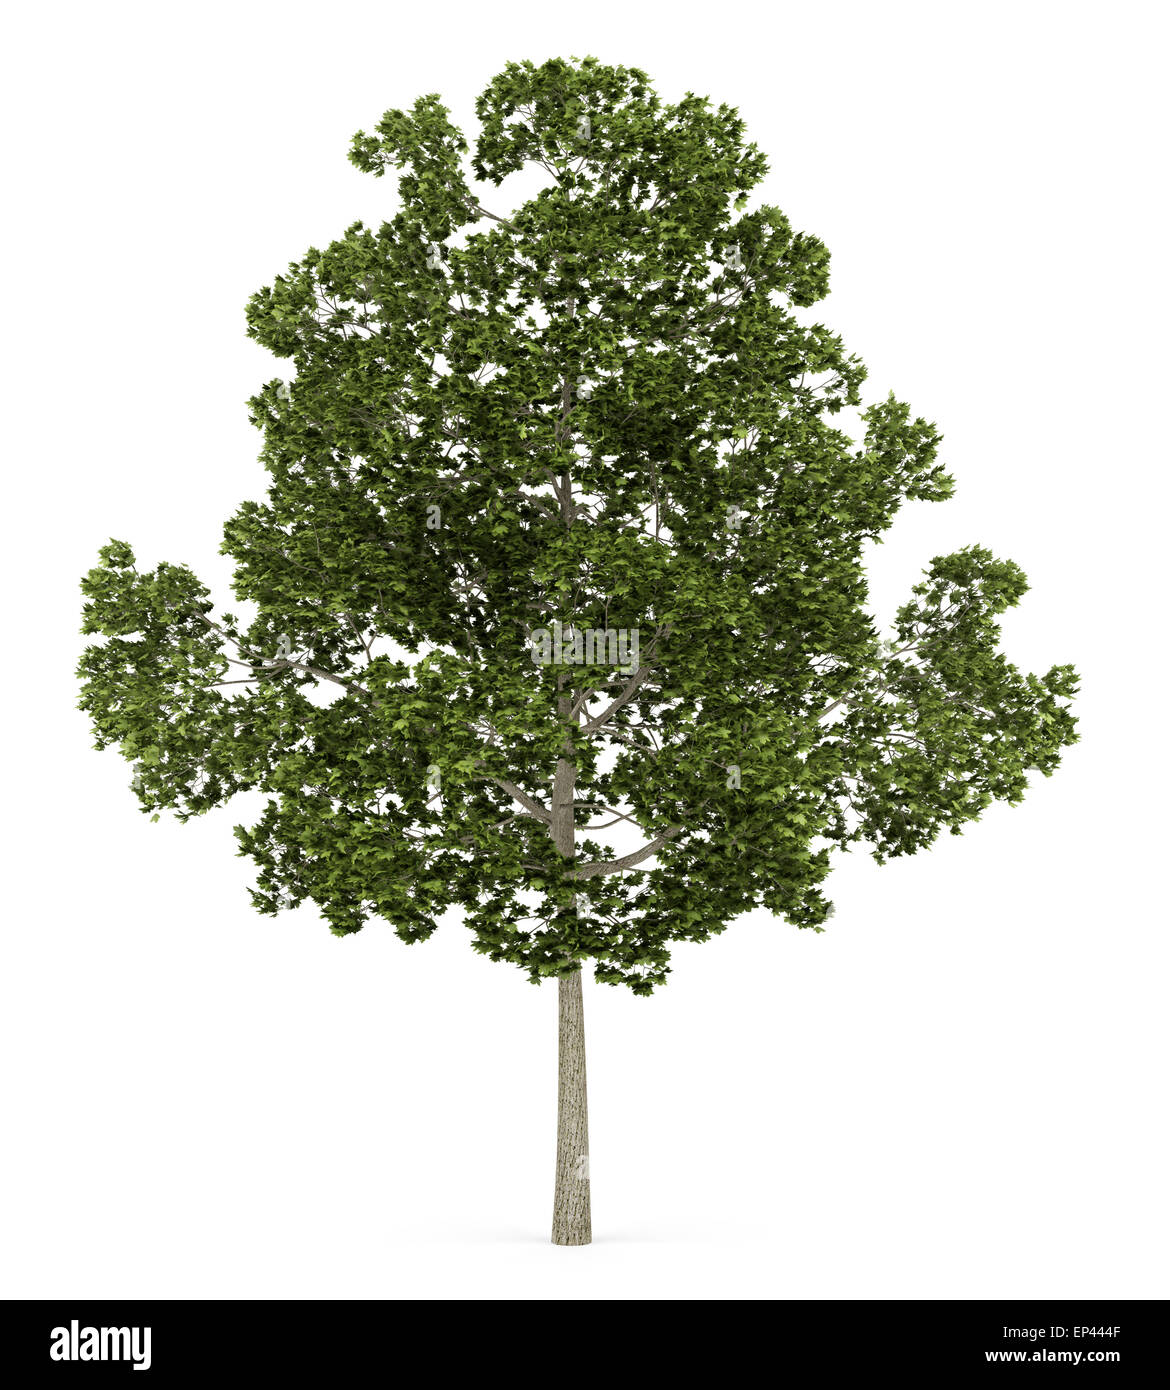 acer platanoides tree isolated on white background Stock Photo